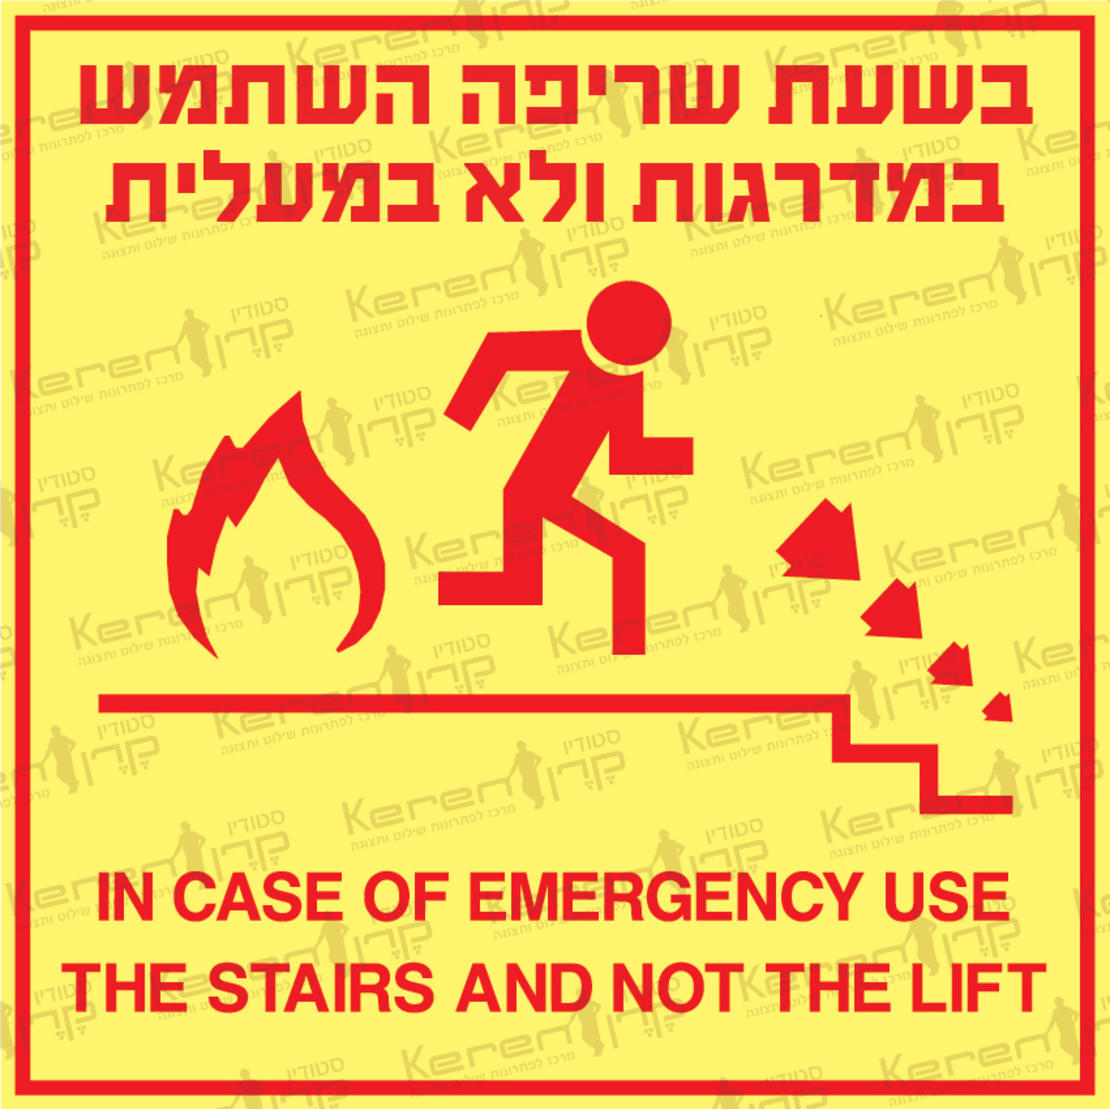 בשעת שריפה השתמש במדרגות ולא במעלית